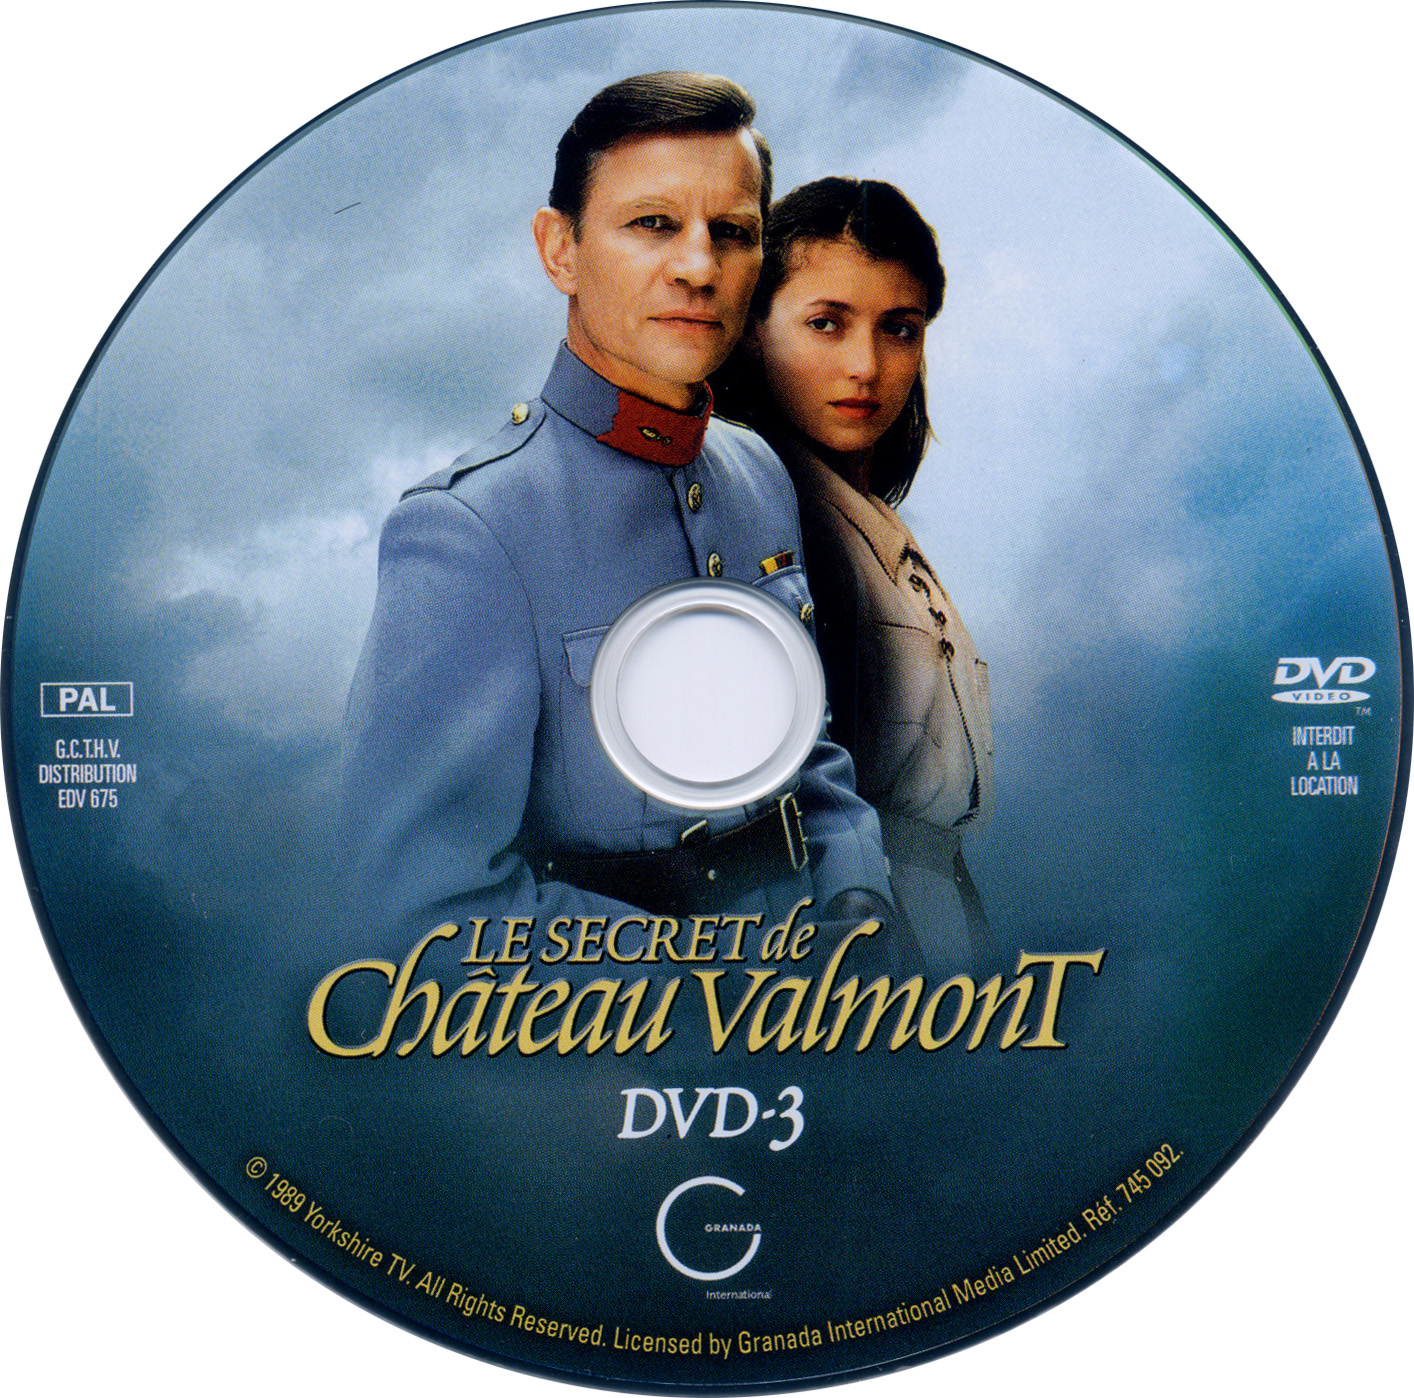 Le secret de chateau Valmont dvd 3